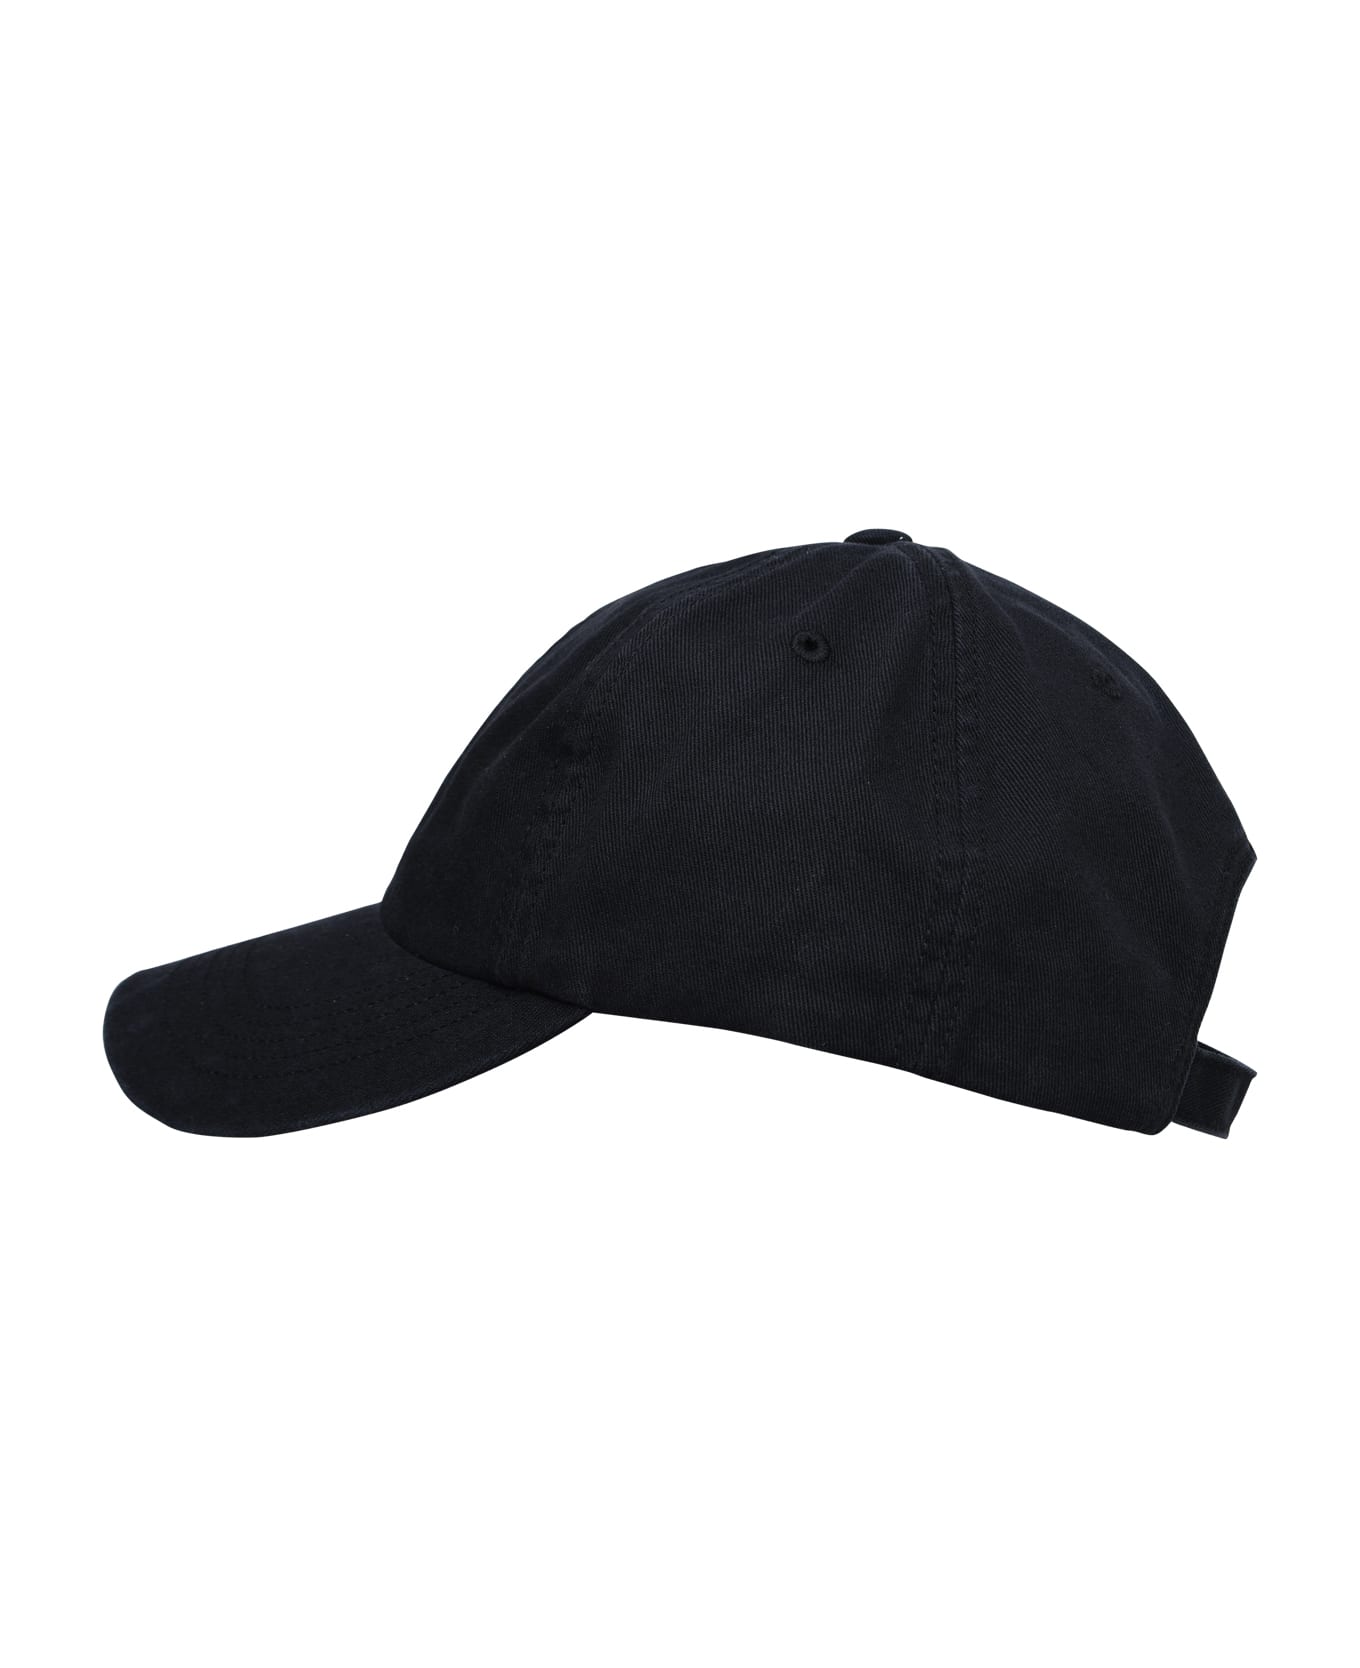 Y-3 'dad' Black Cotton Hat - Black 帽子